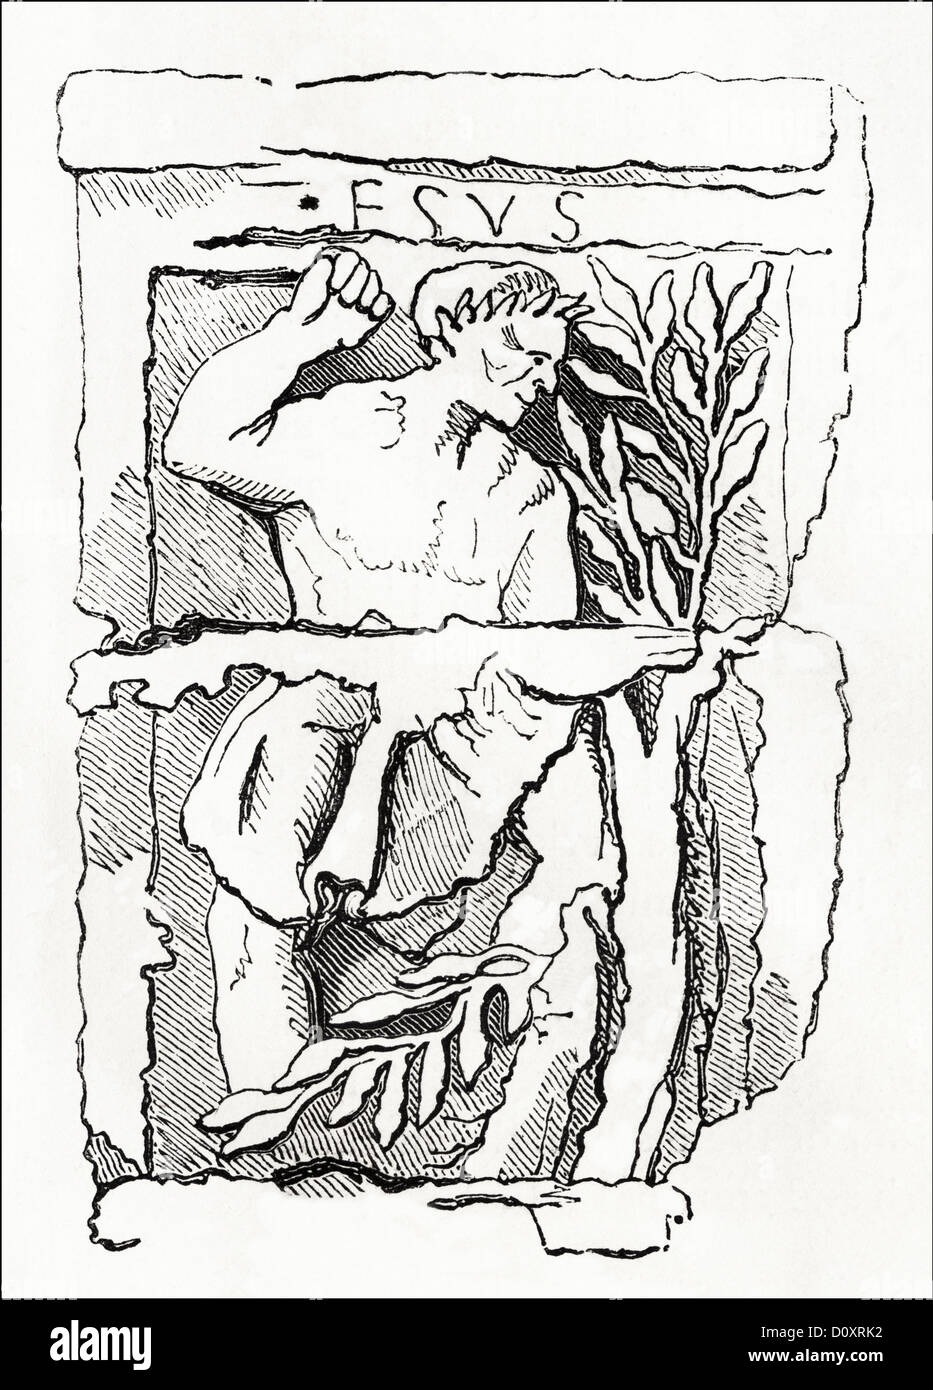 Viktorianischer Holzschnitt von Hesus aus der Zeit um 1864 Die Statue Säule der Bootsmänner eine monumentale römische Säule Errichtet in Lutetia (modernes Paris) Stockfoto